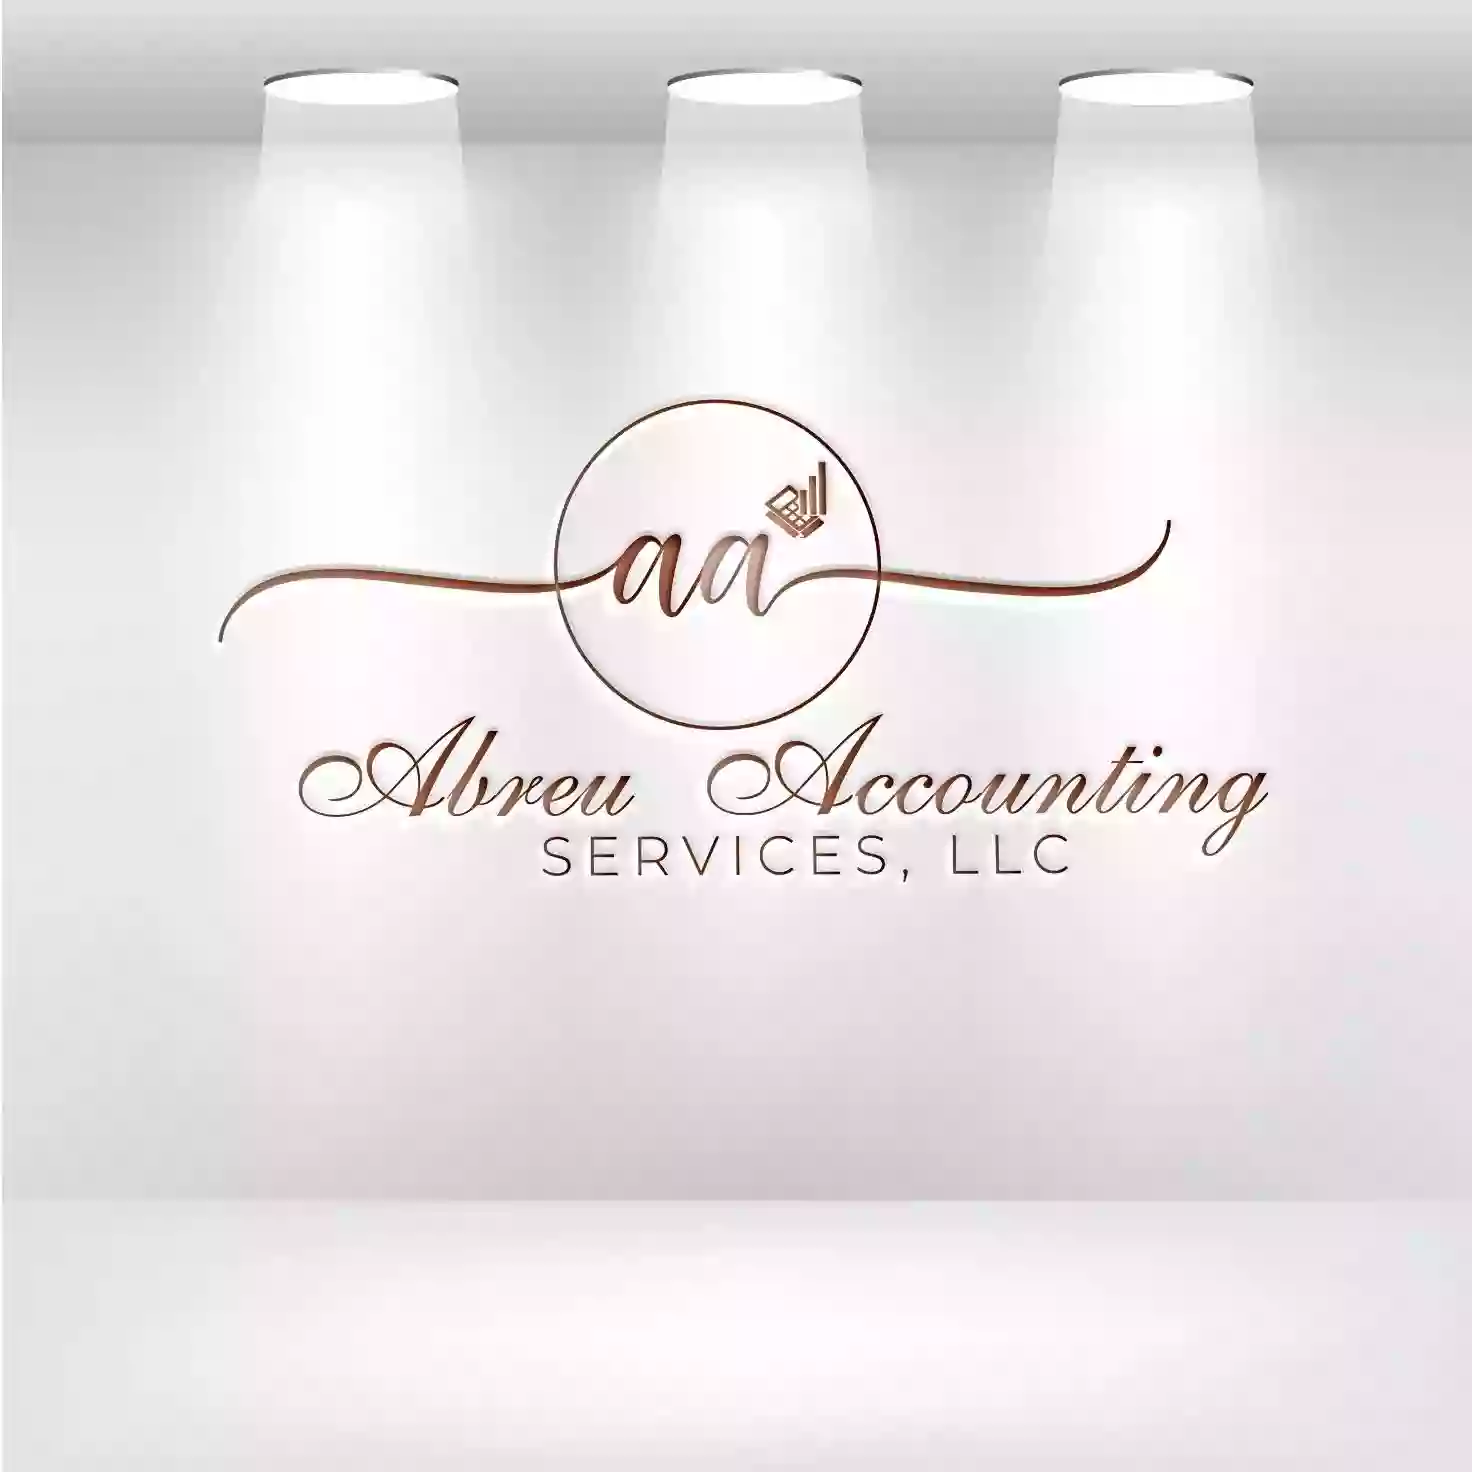 Abreu Accounting Services, LLC